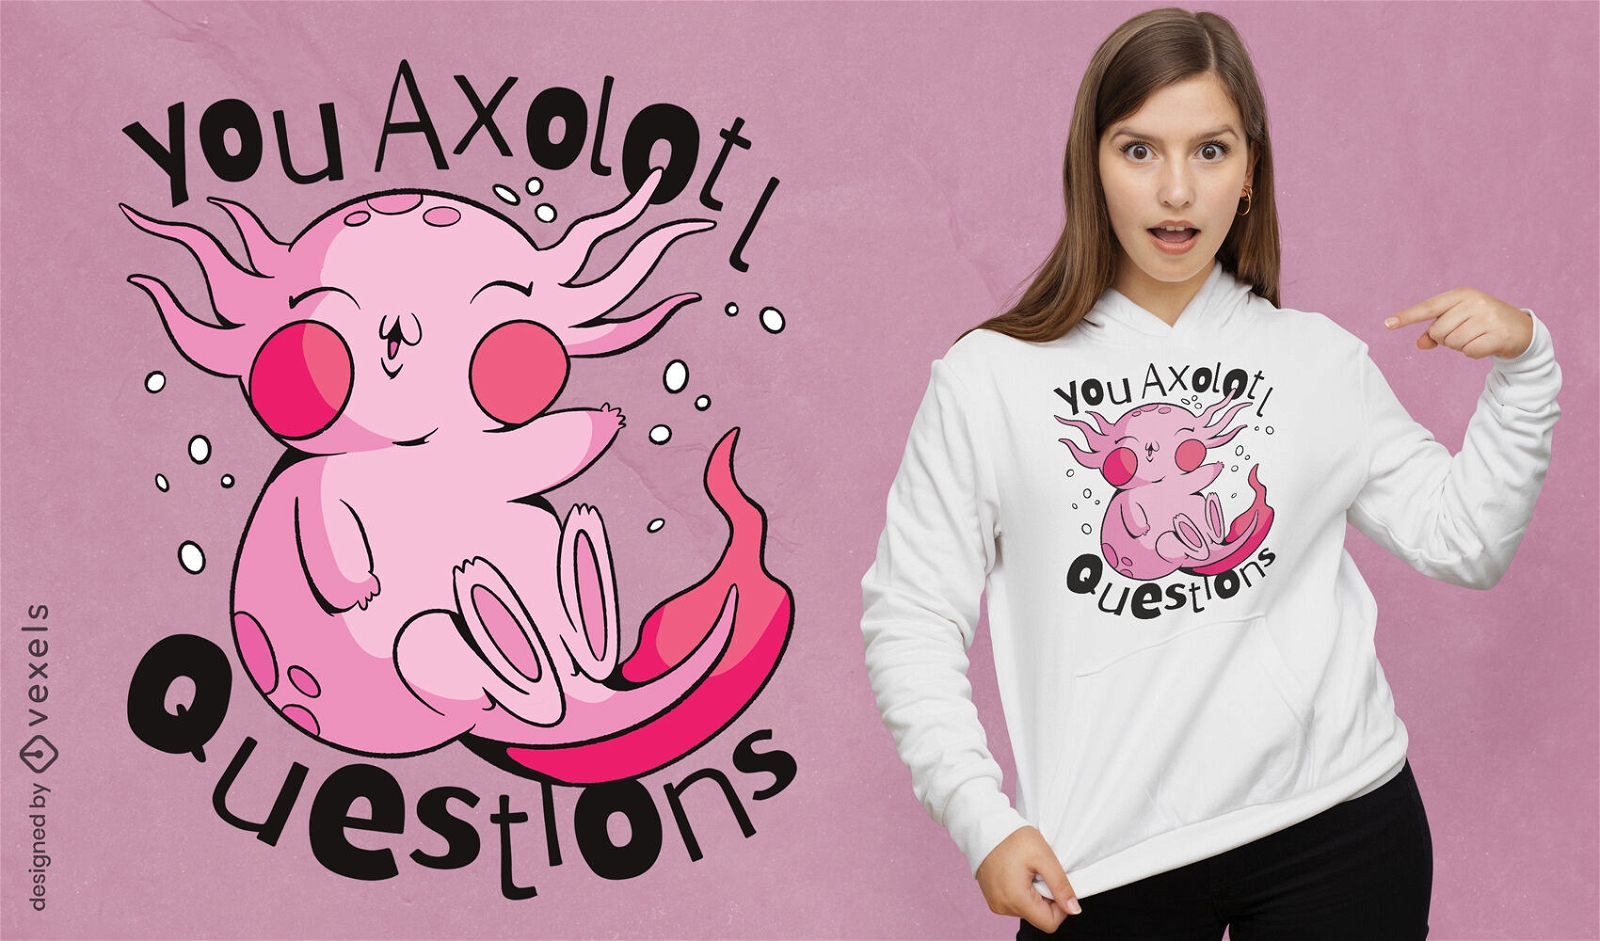 Axolotl questiona design de camiseta engra?ada